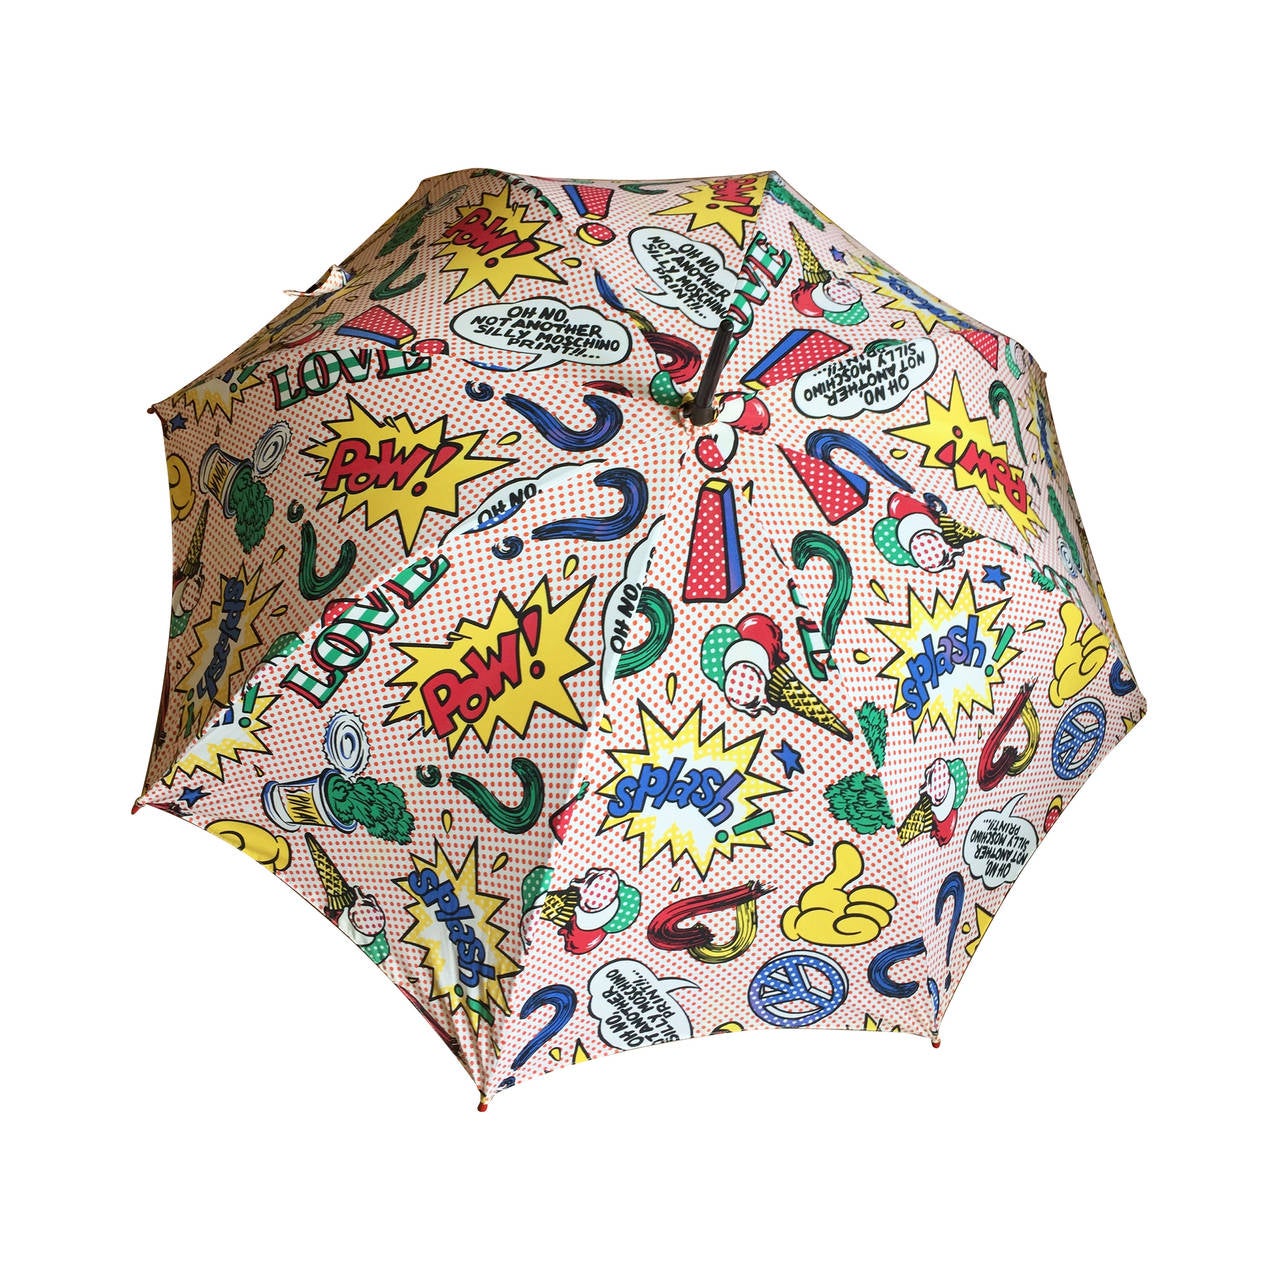 Moschino 1991 Lichtenstein Inspired Umbrella with Heart Handle